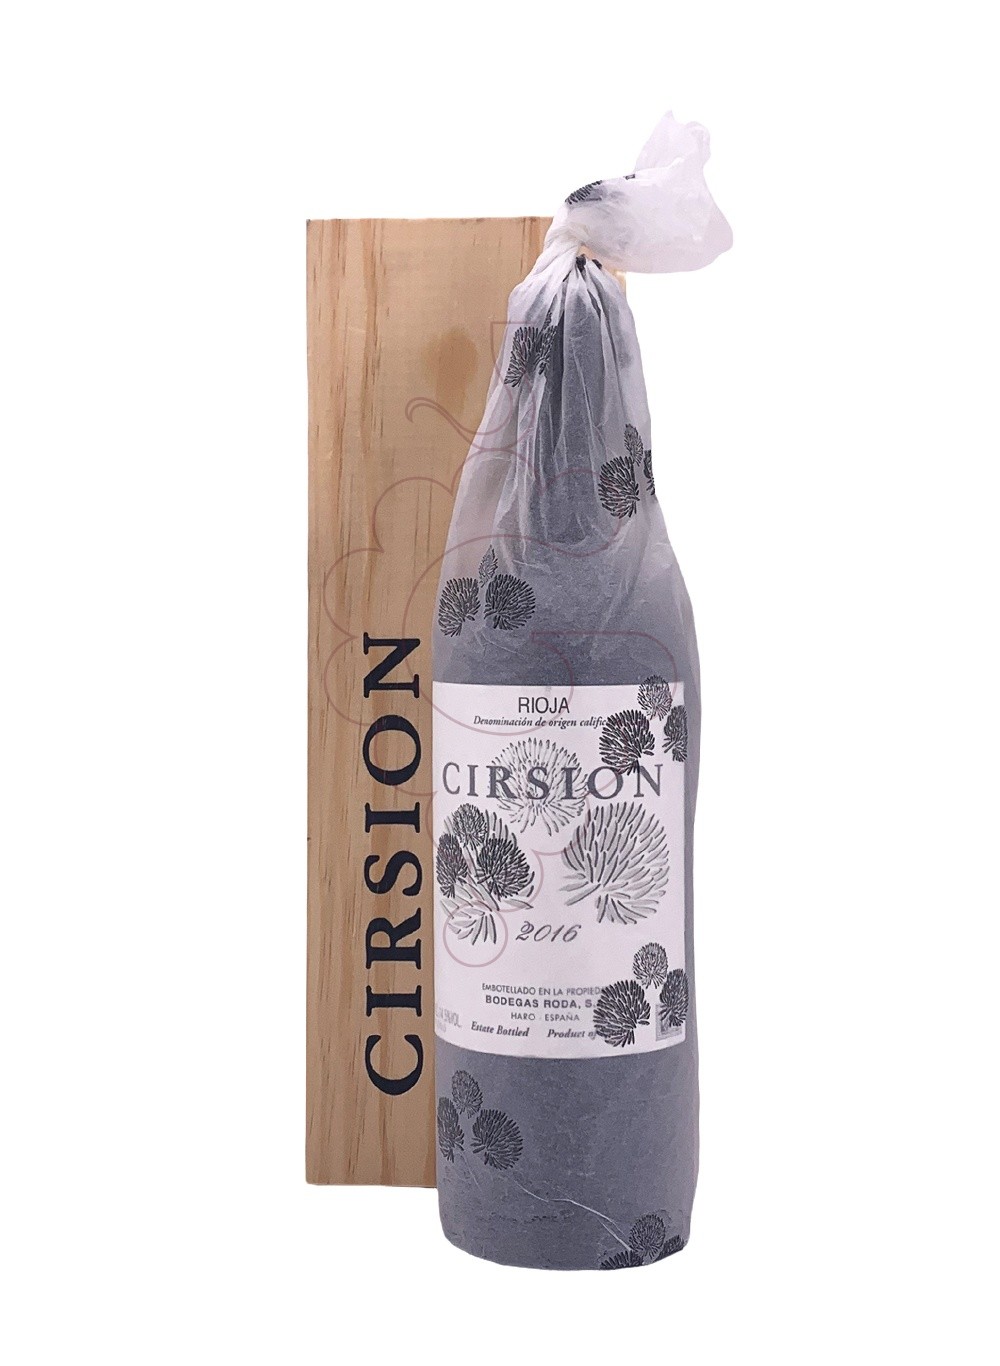 Foto Cirsion vino tinto